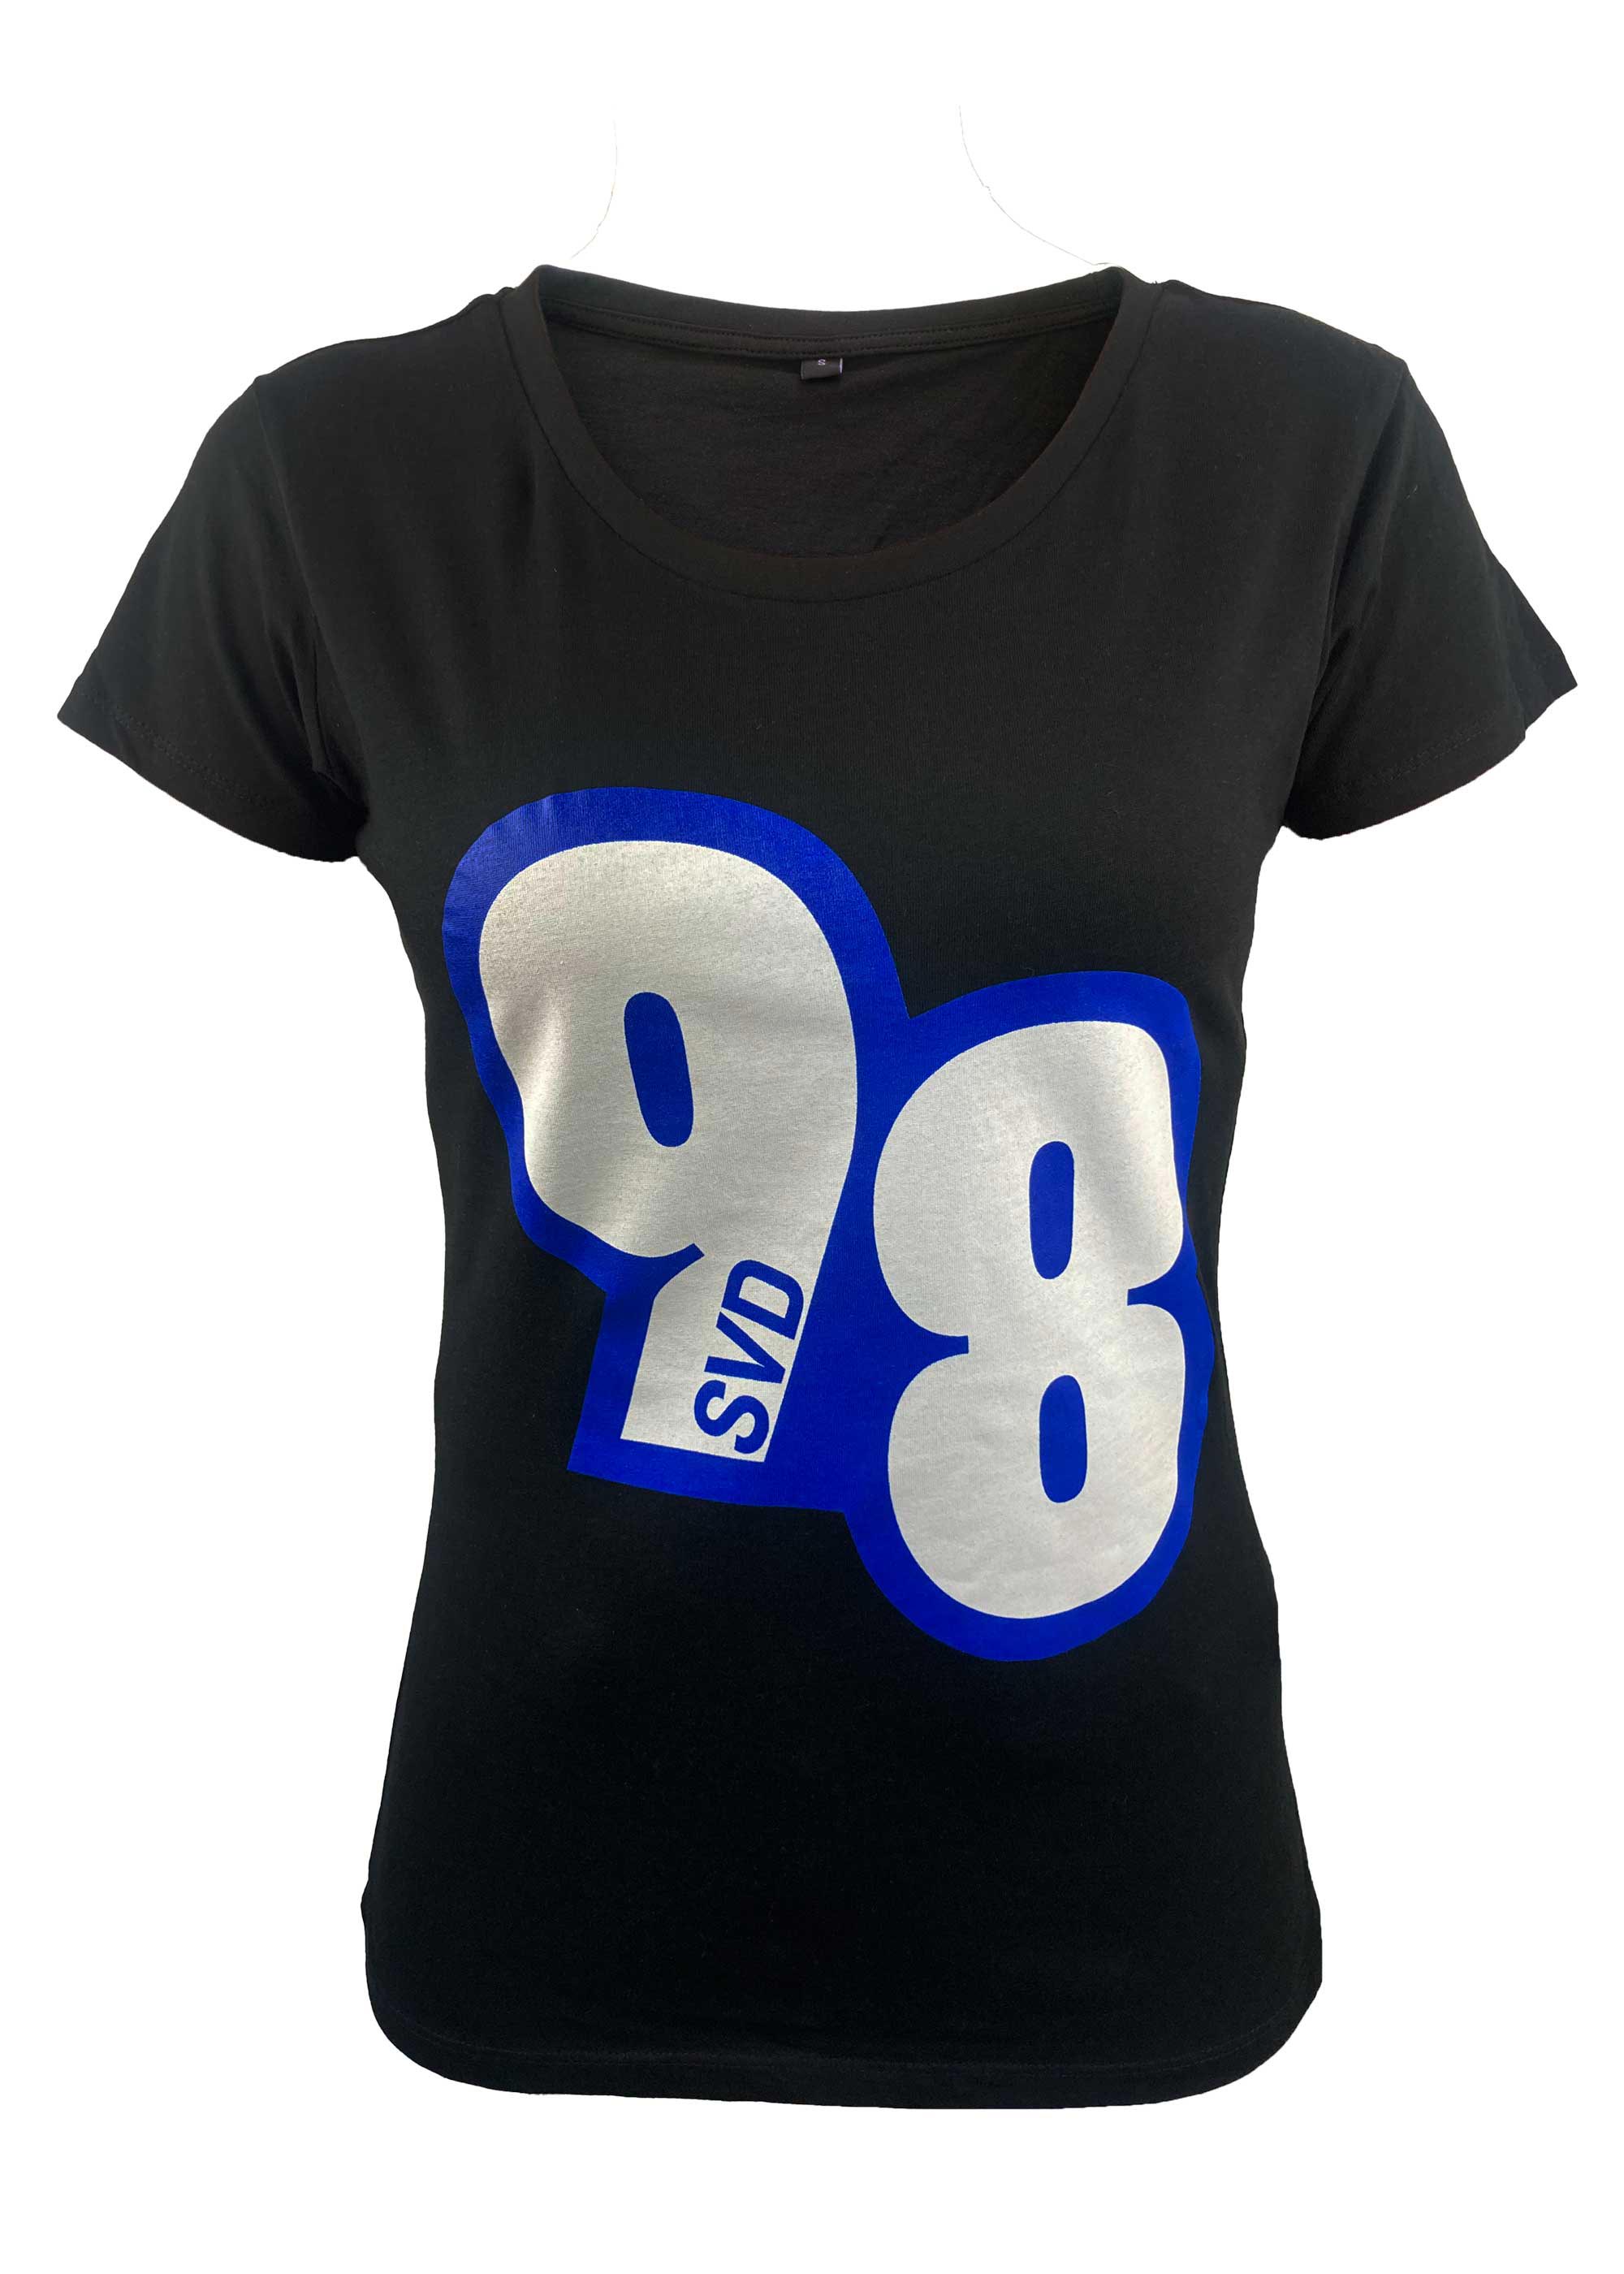 SV 98 Damen-Shirt "98"